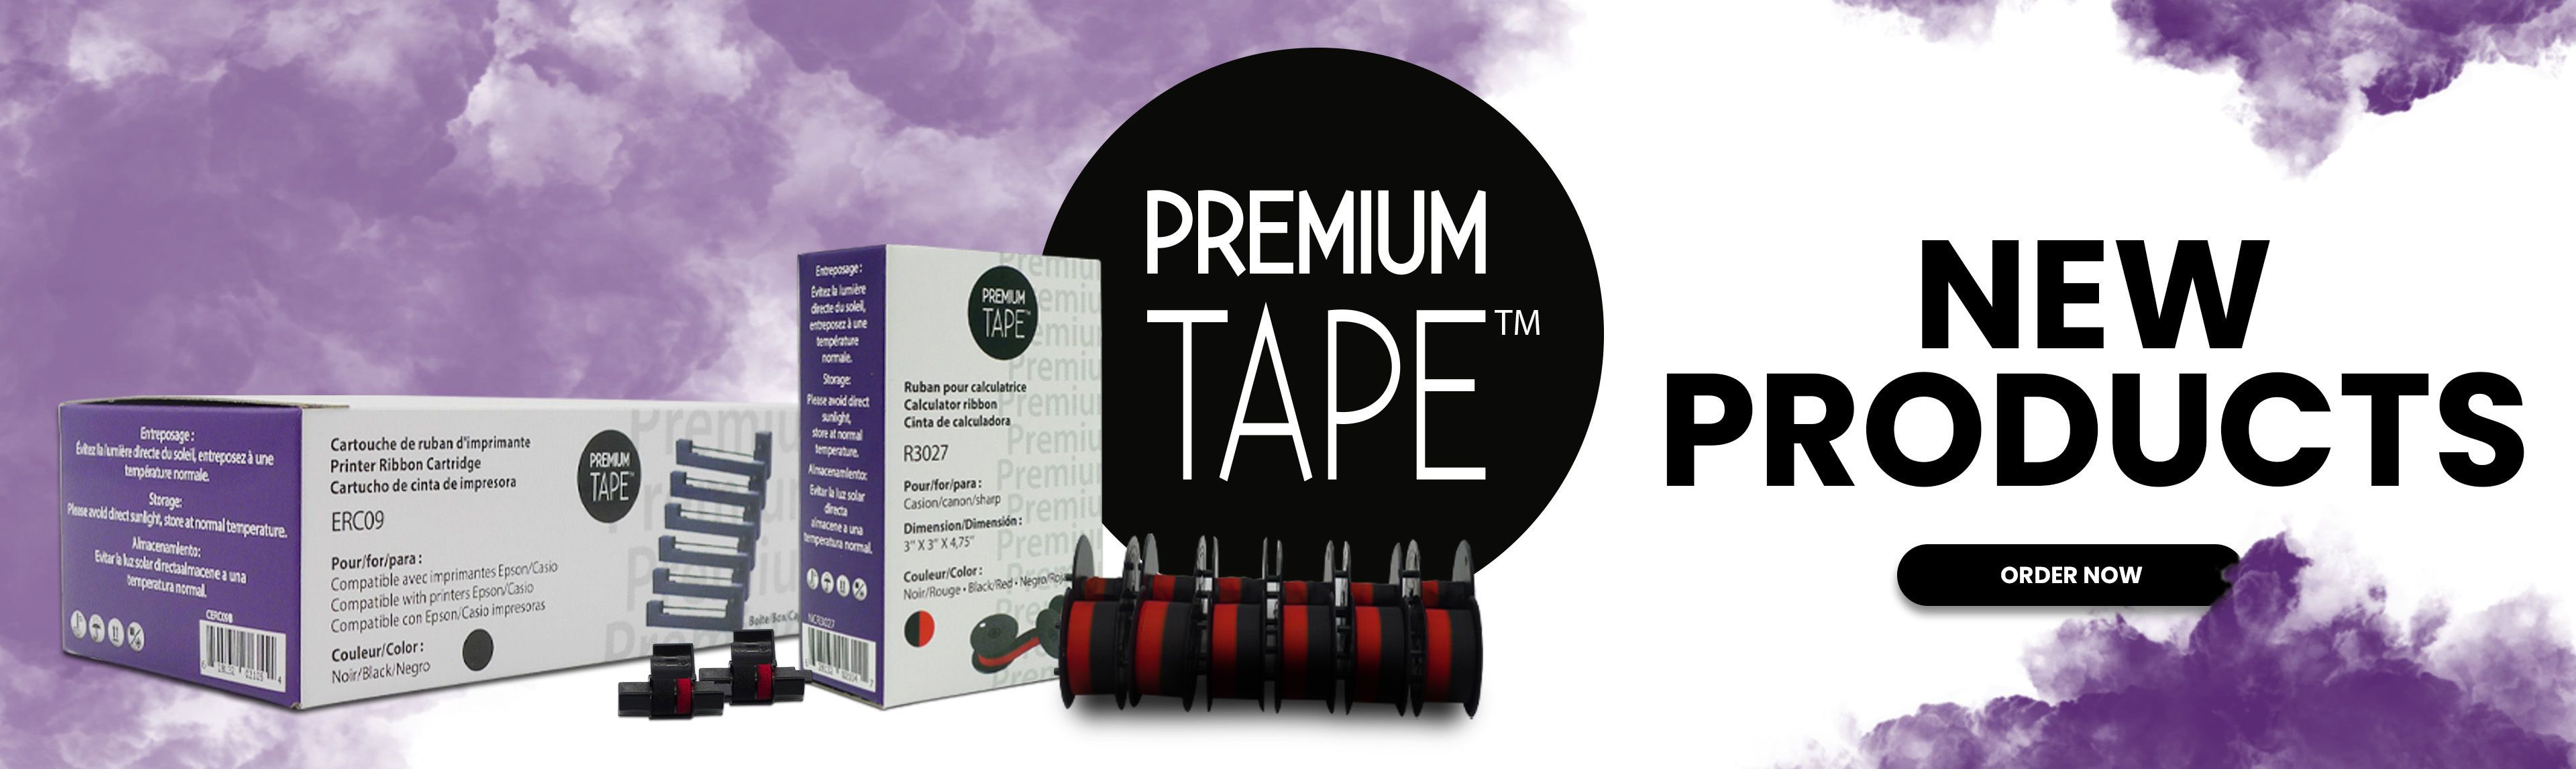 Premium_tape_2022_EN